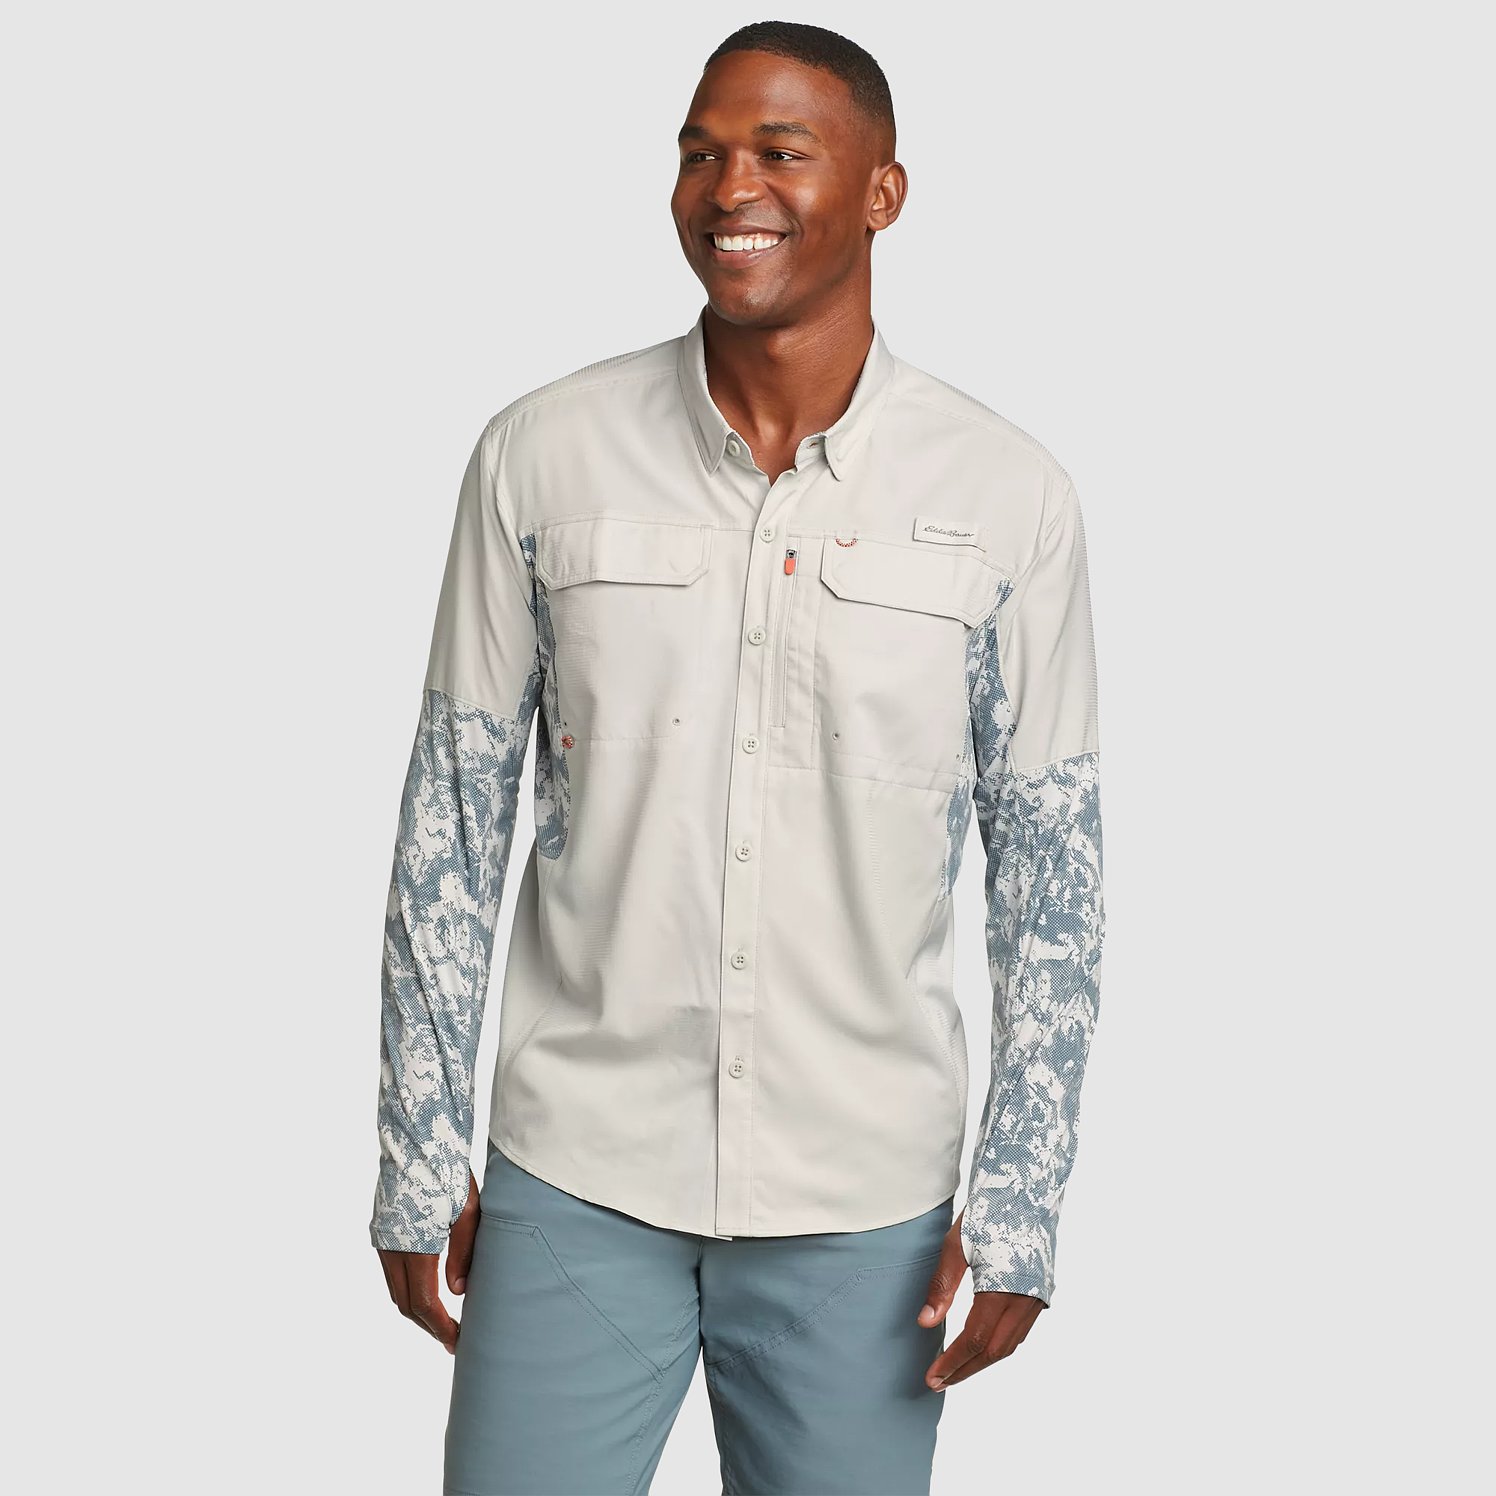 Men's Twin Fin Hybrid Long-Sleeve Fishing Shirt